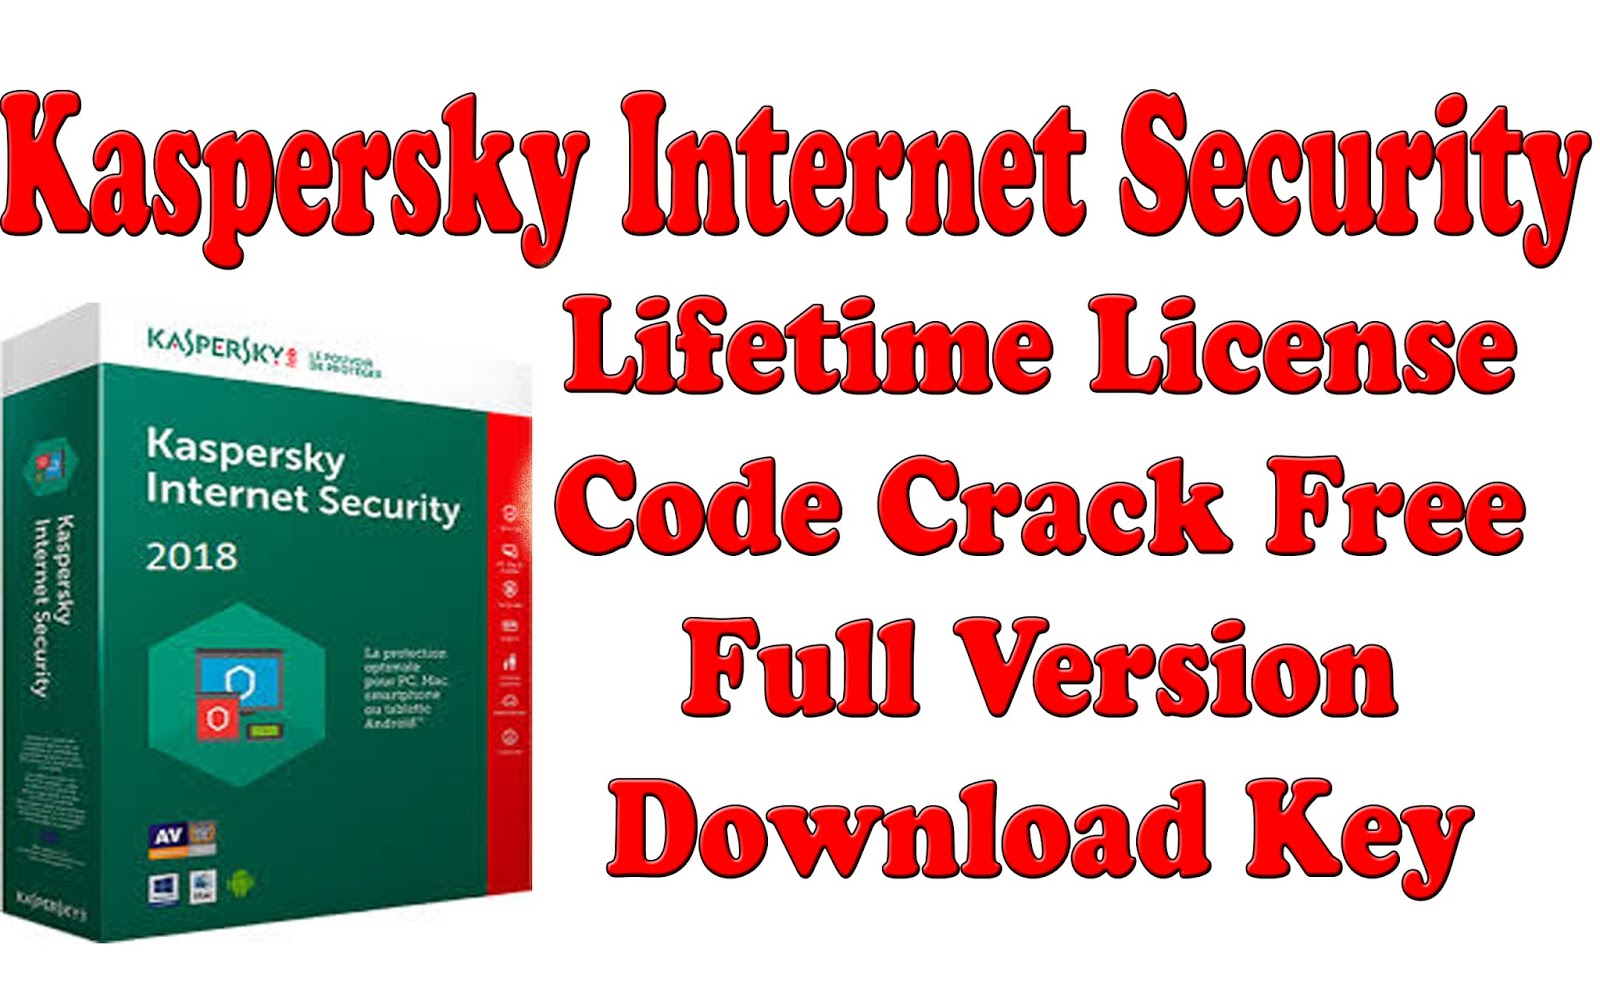 Load License Key Crack Kaspersky